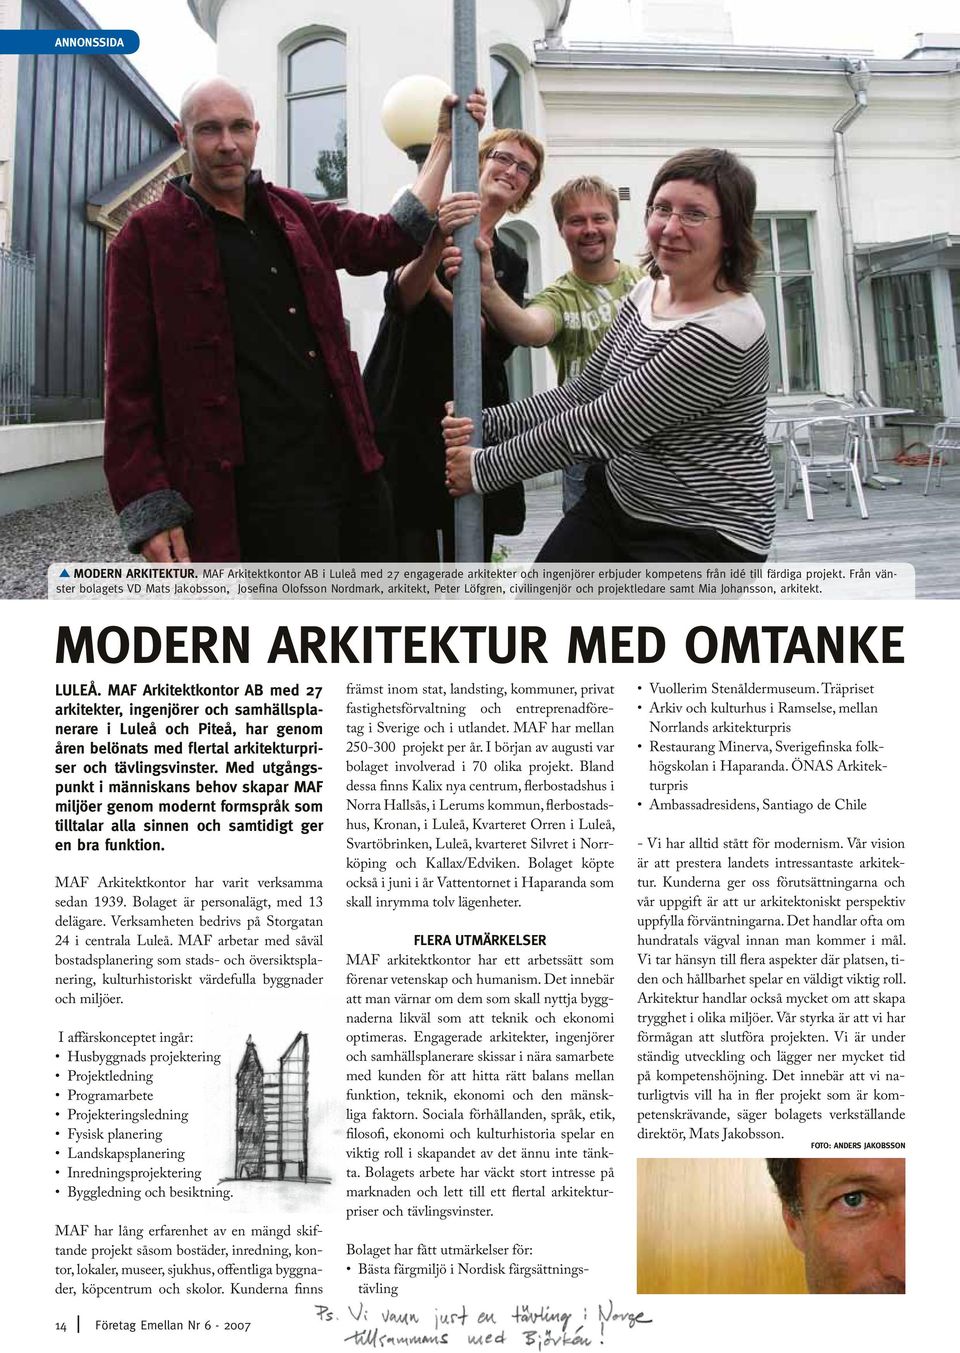 MAF Arkitektkontor AB med 27 arkitekter, ingenjörer och samhällsplanerare i Luleå och Piteå, har genom åren belönats med flertal arkitekturpriser och tävlingsvinster.